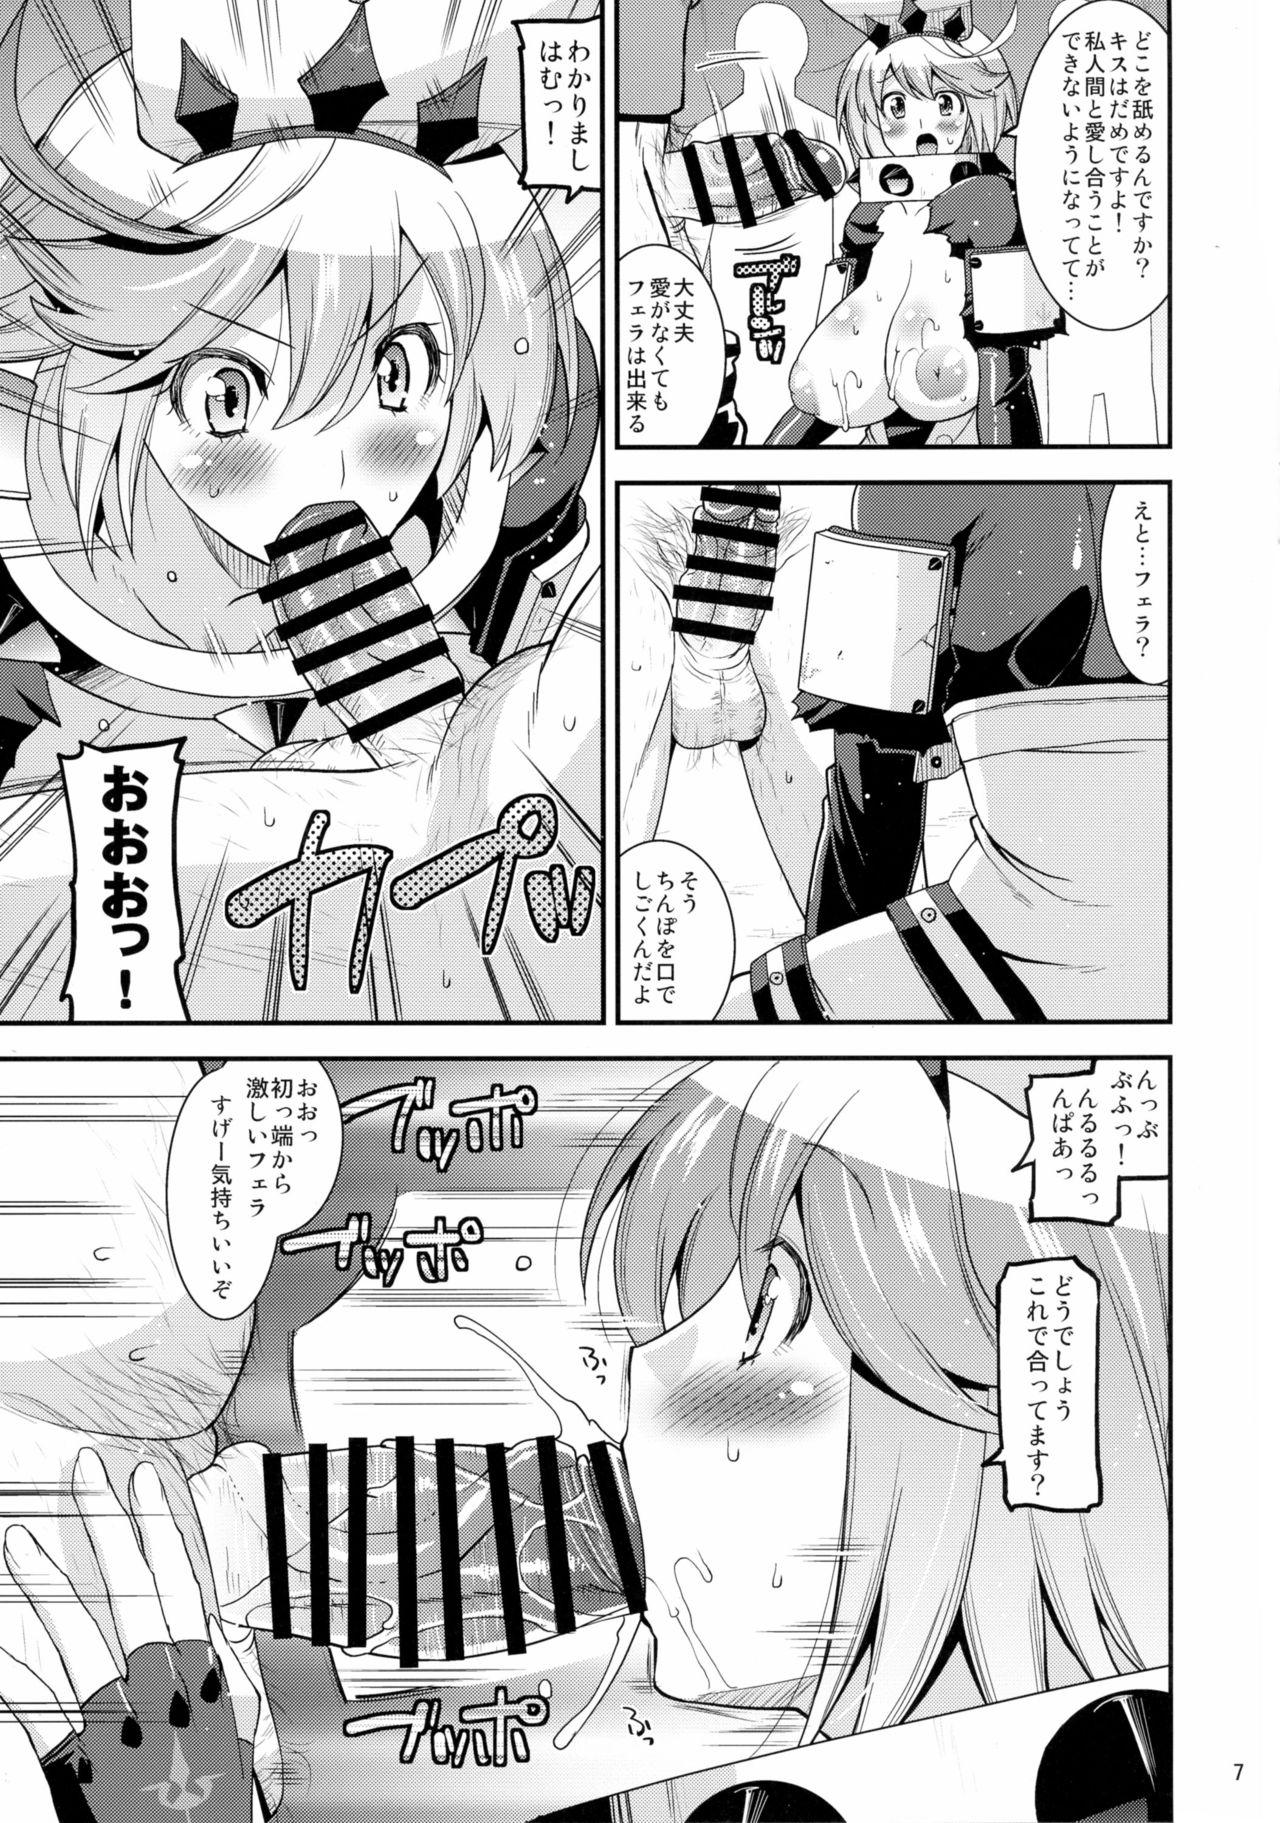 For Sekai Seifuku Shichatte Gomennasaix! - Guilty gear Young - Page 7